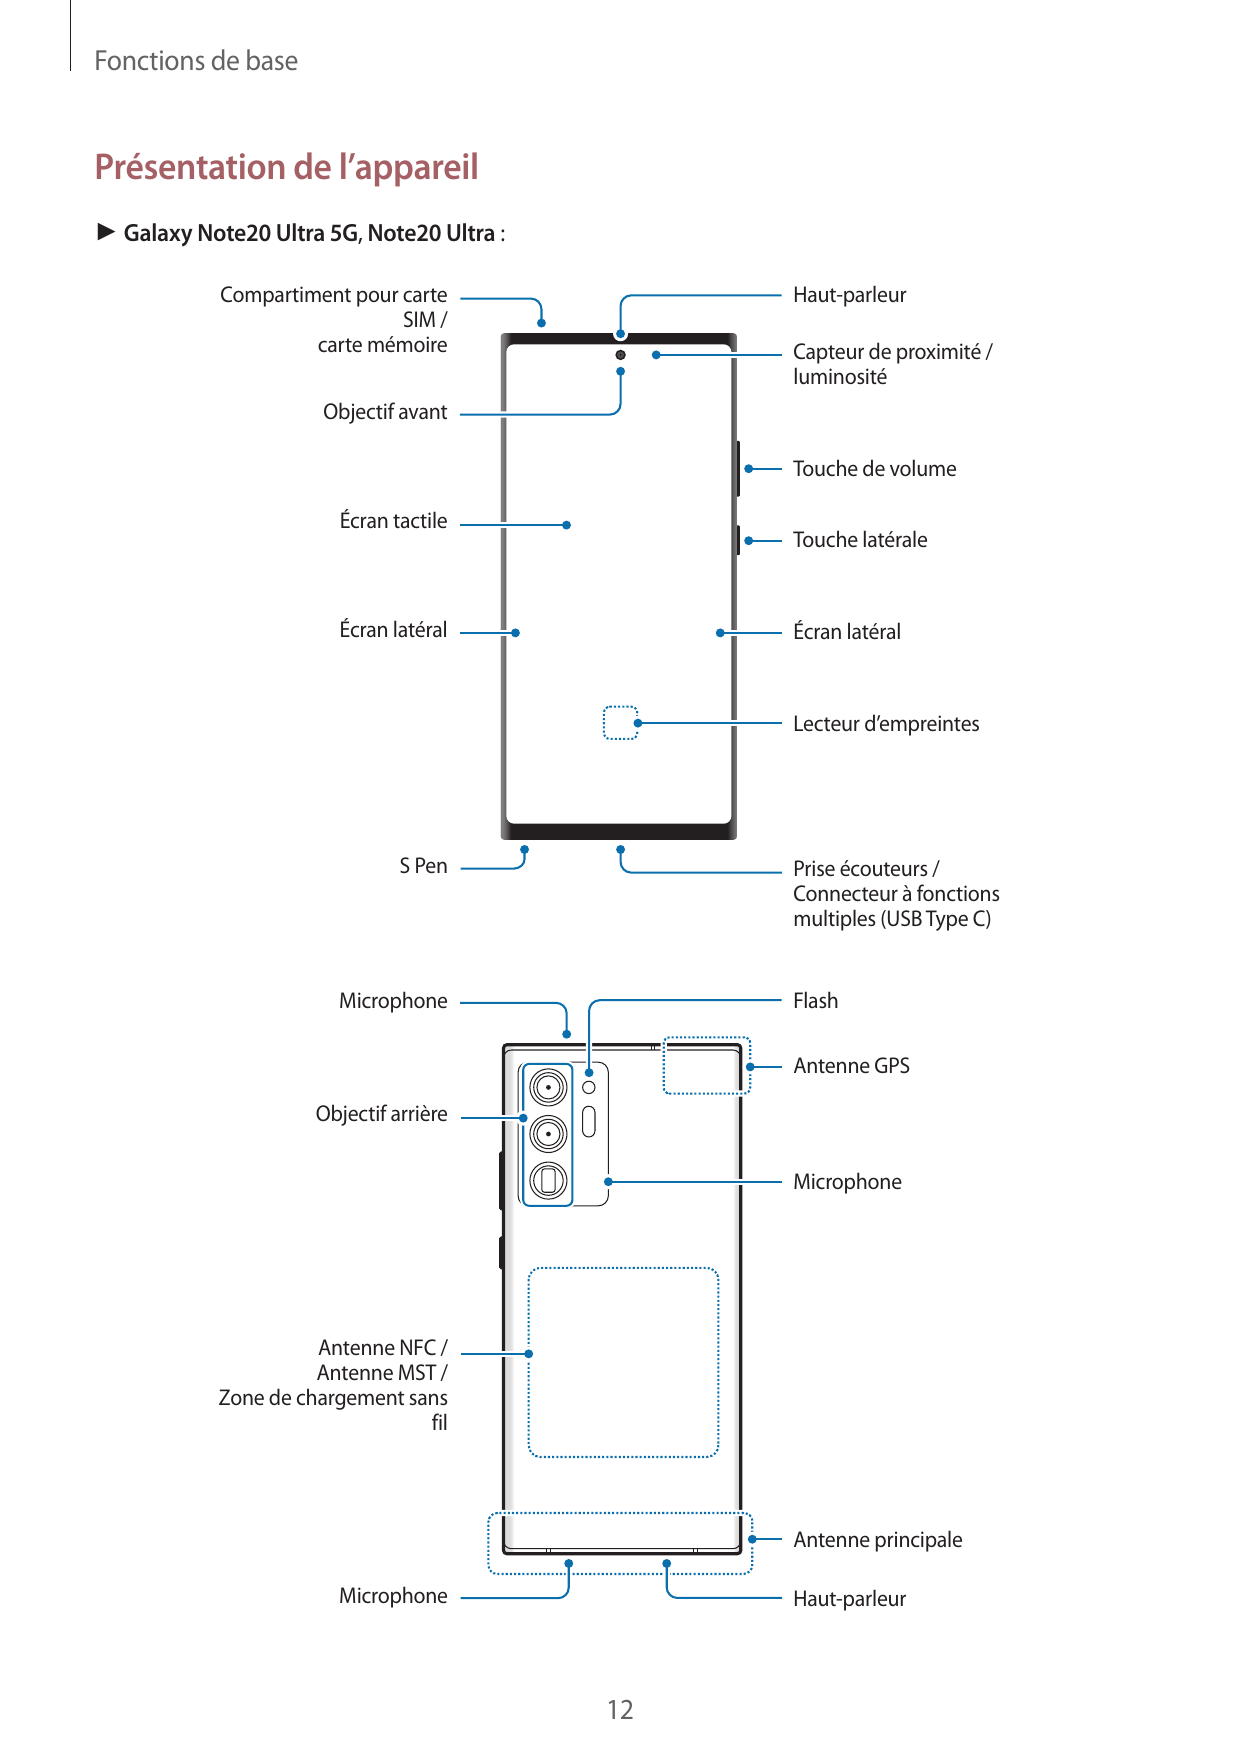 Fonctions de basePrésentation de l’appareil► Galaxy Note20 Ultra 5G, Note20 Ultra :Compartiment pour carteSIM /carte mémoireHaut